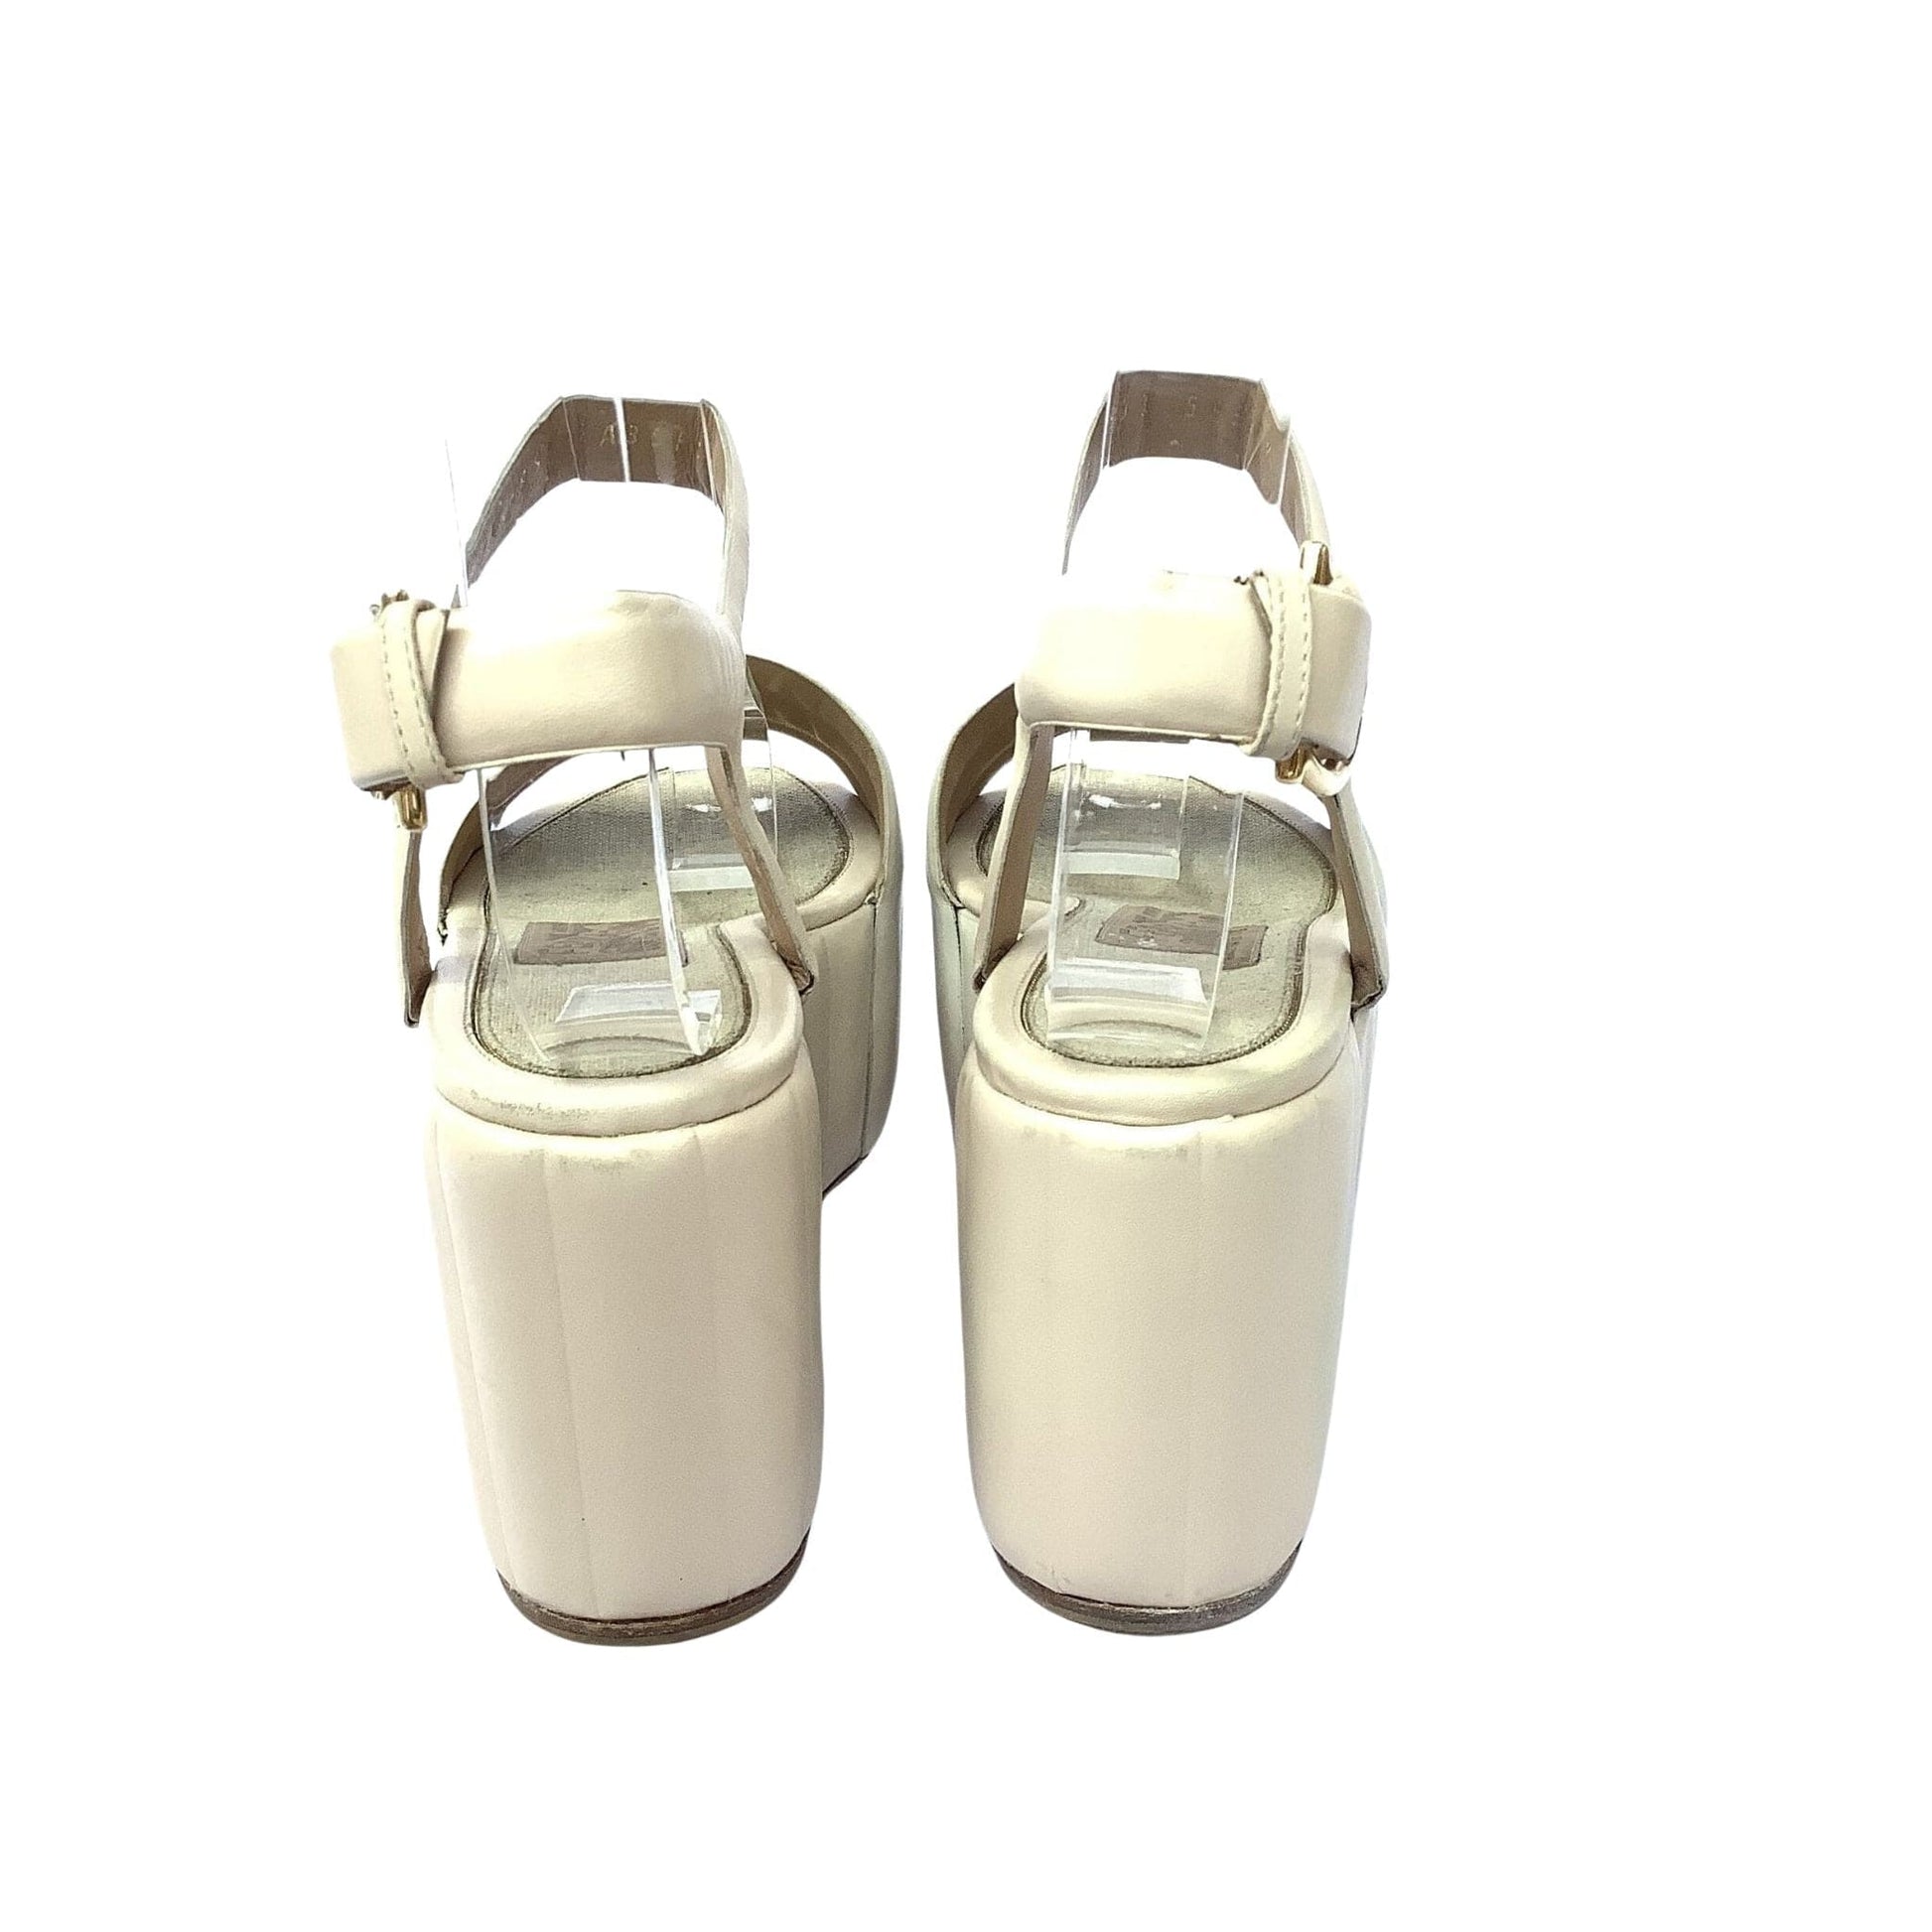 VTG Ferragamo Quilted Sandals 6 / Beige / Vintage 1990s